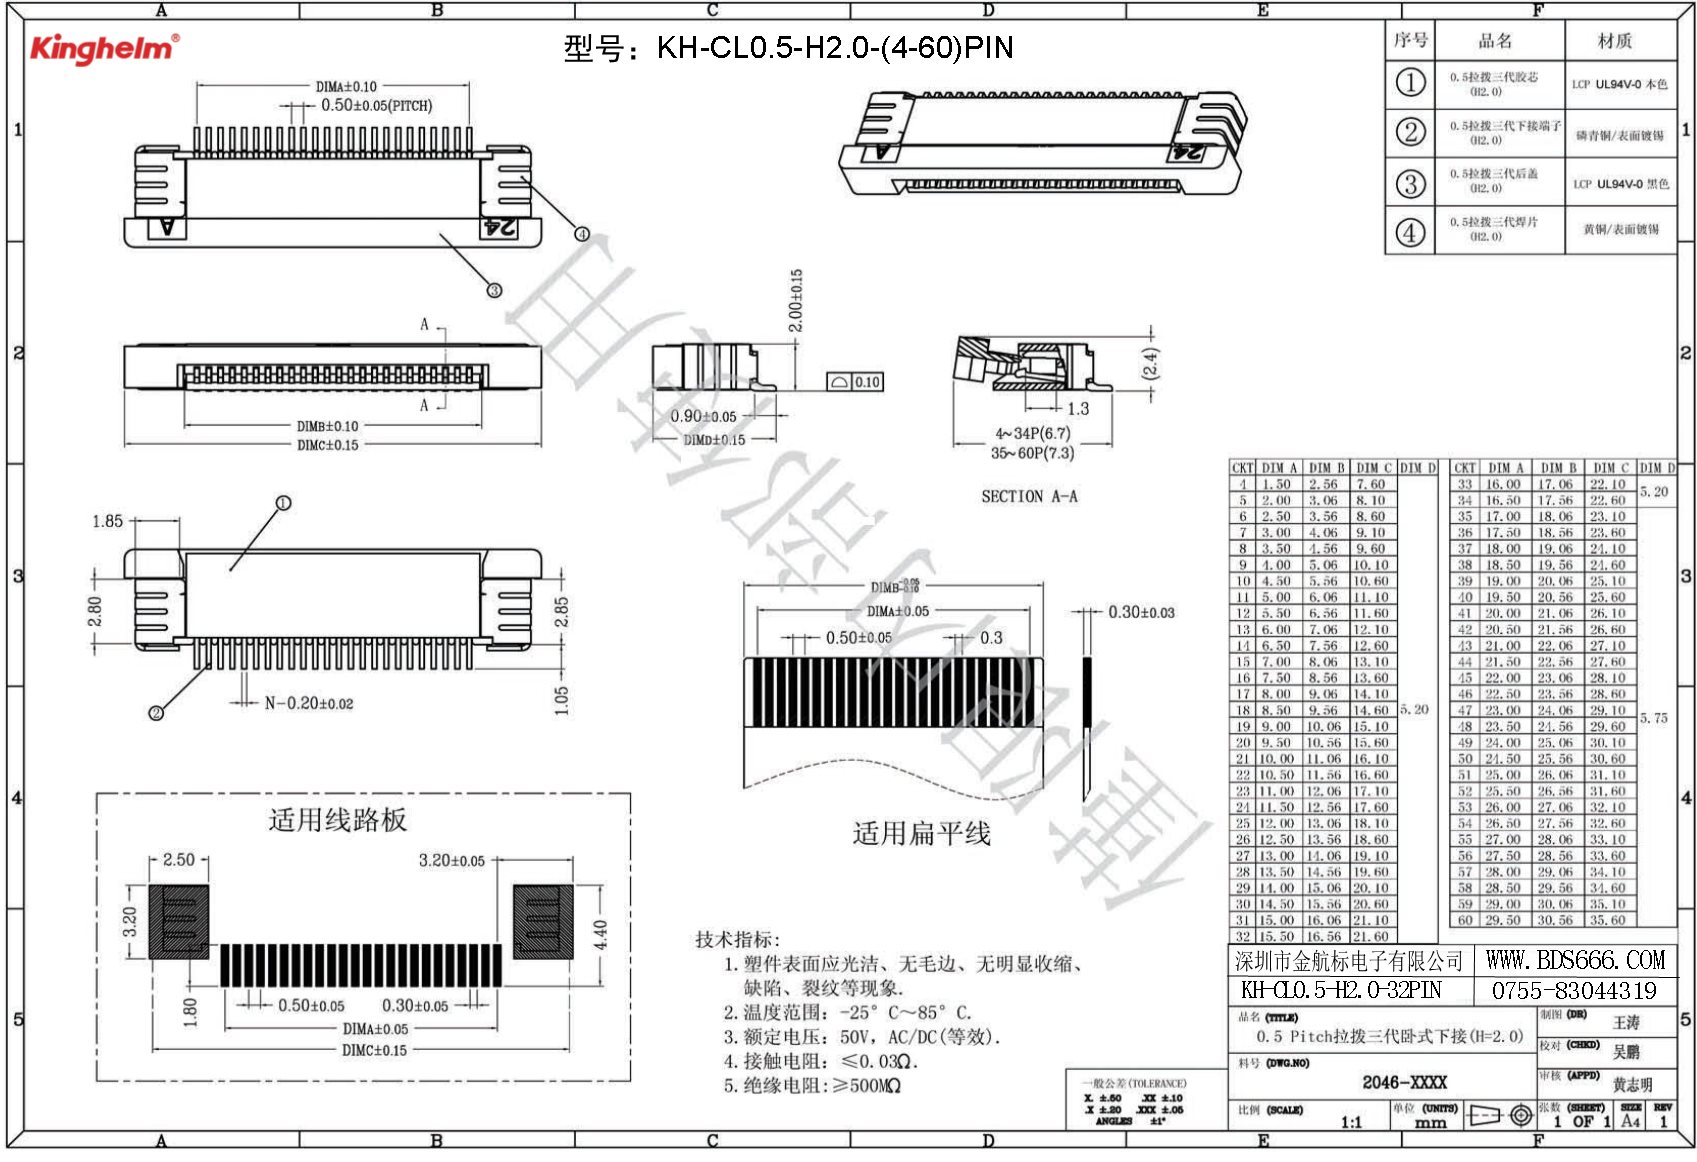 KH-CL0.5-H2.0-32PIN-1.jpg